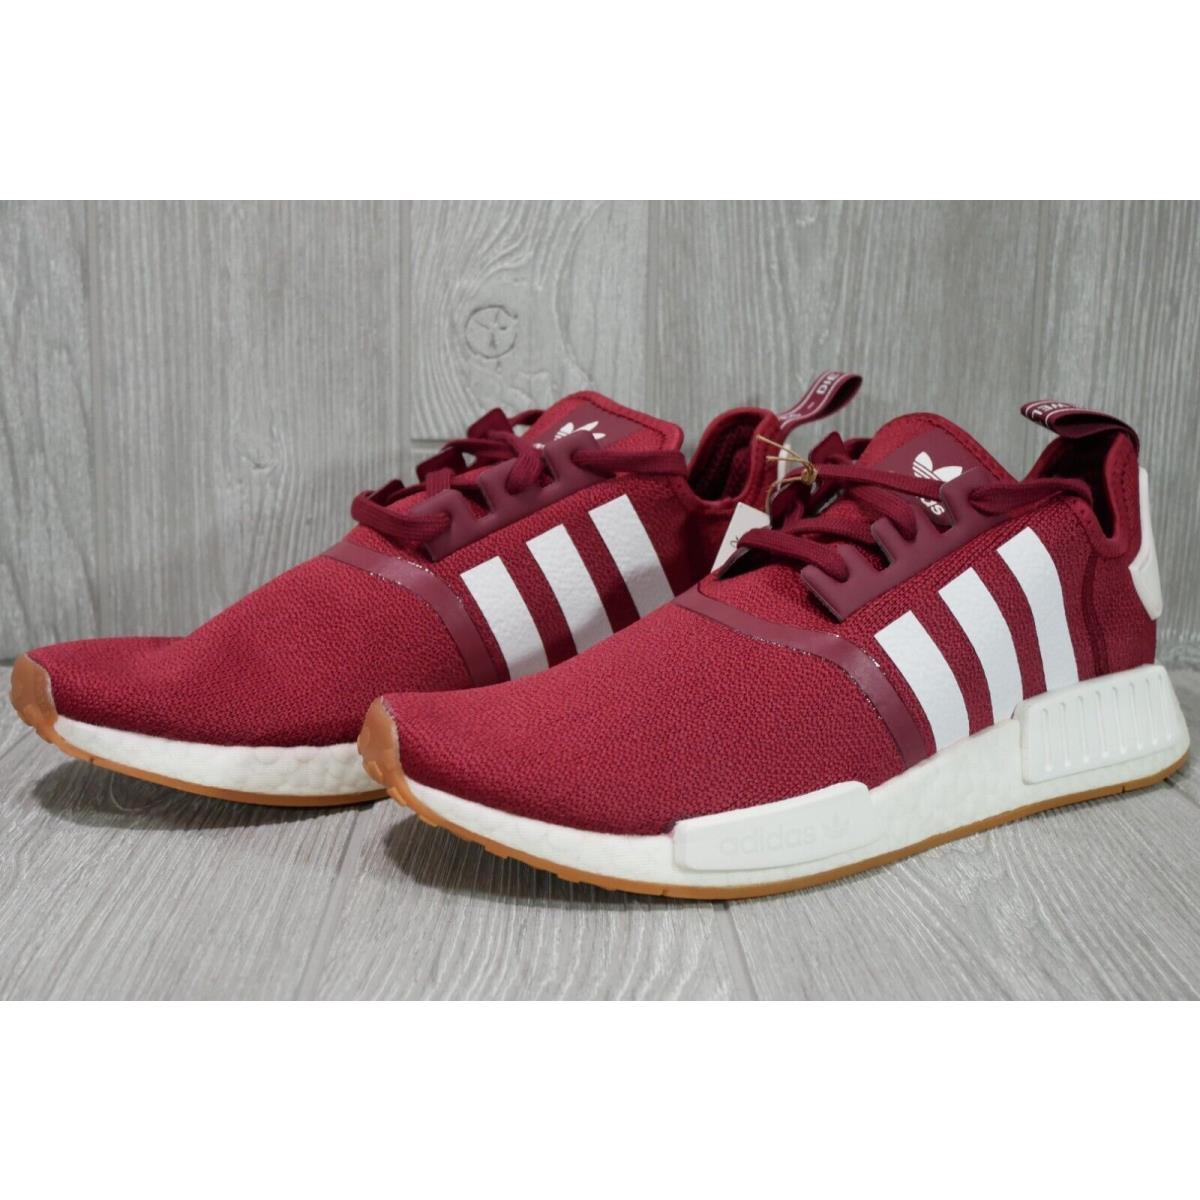 Adidas shoes Originals - Red 0